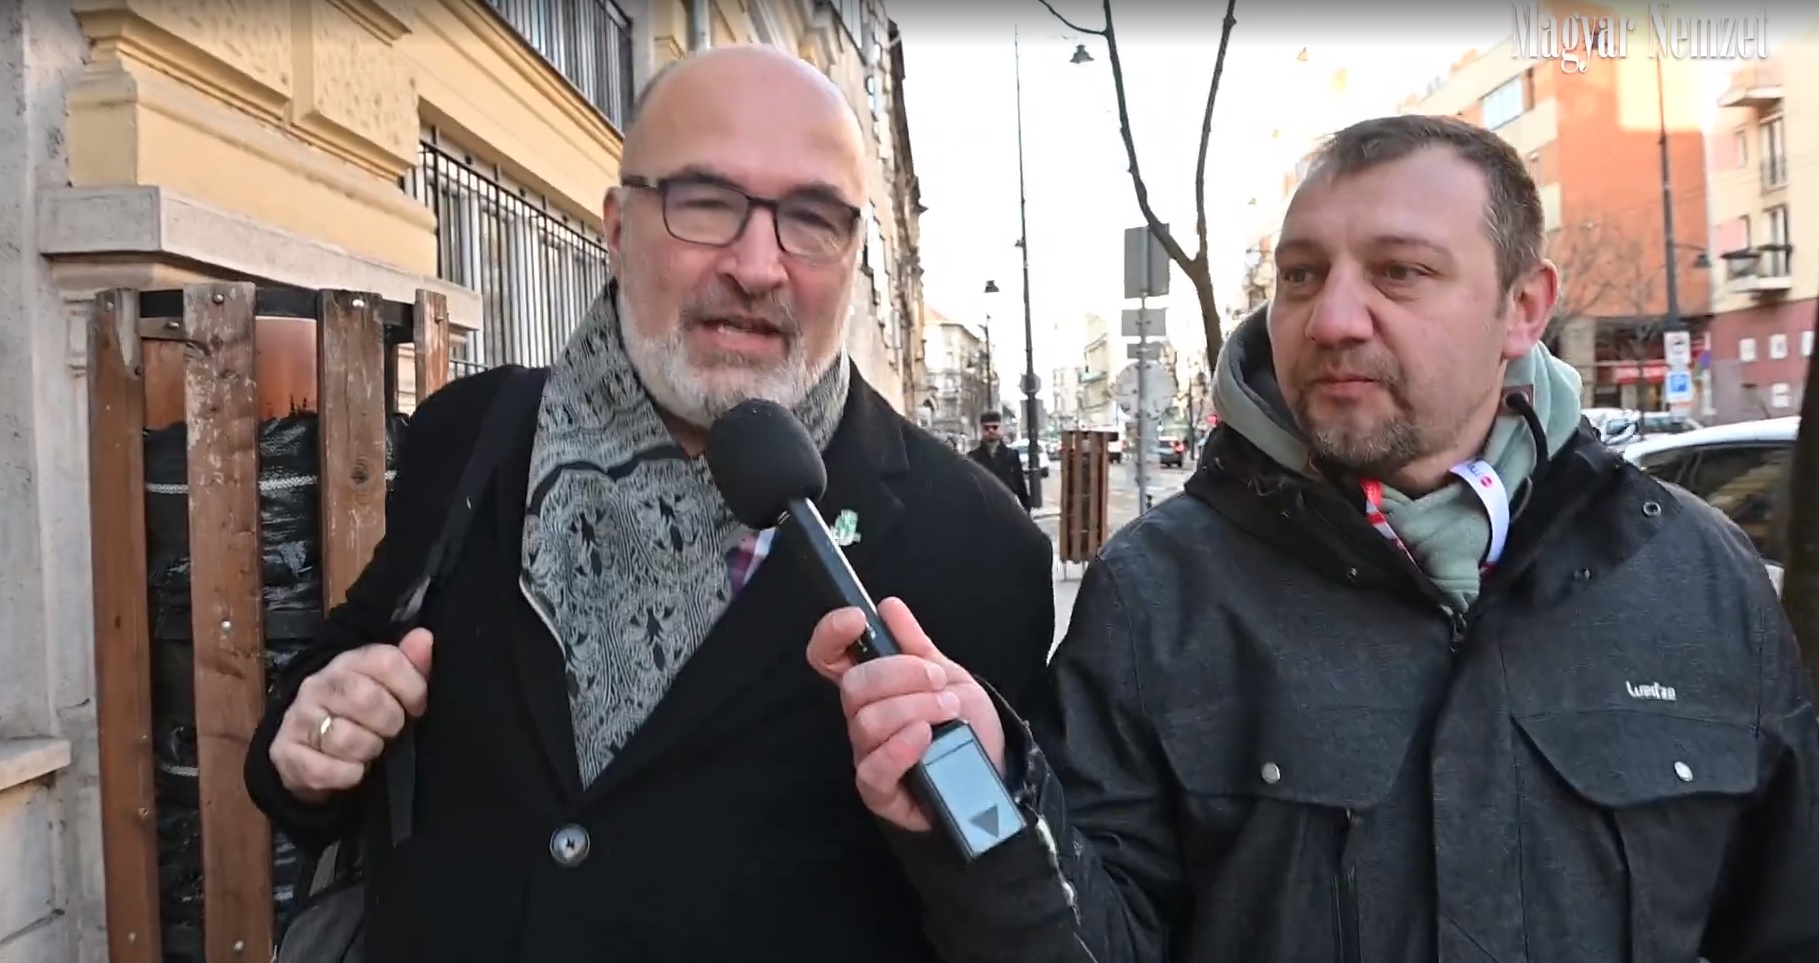 Pikó András hallgat és menekül a kérdések elől + videó